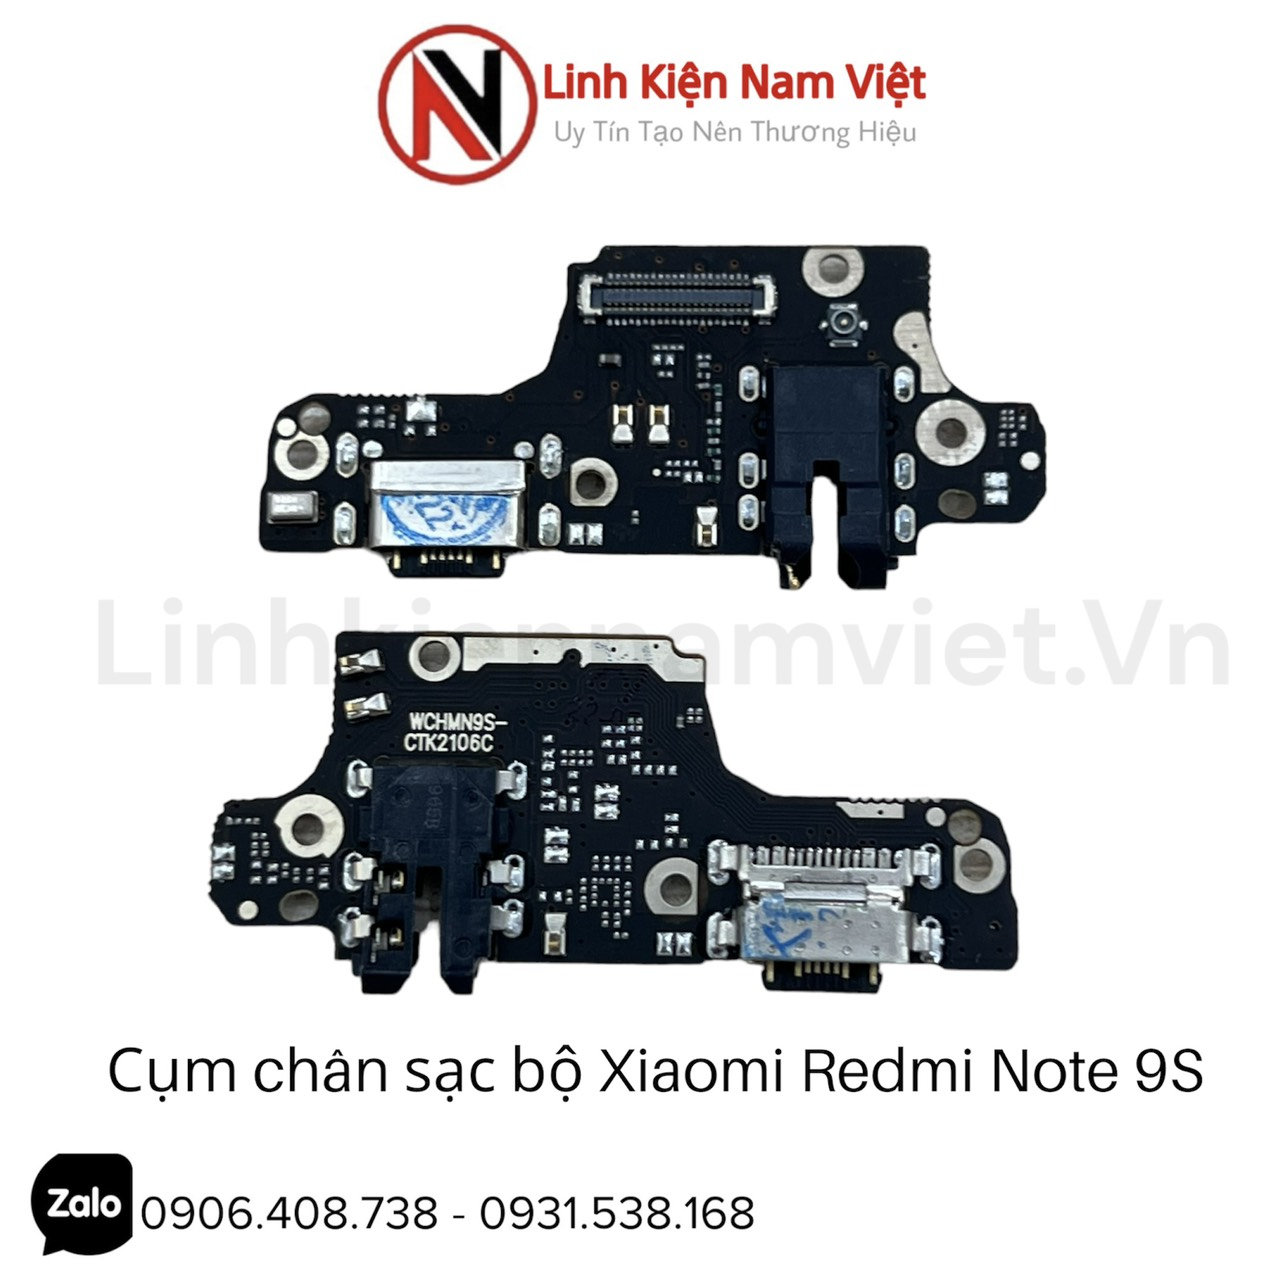 Cum-chan-sac-bo-Xiaomi-Redmi-Note-9S